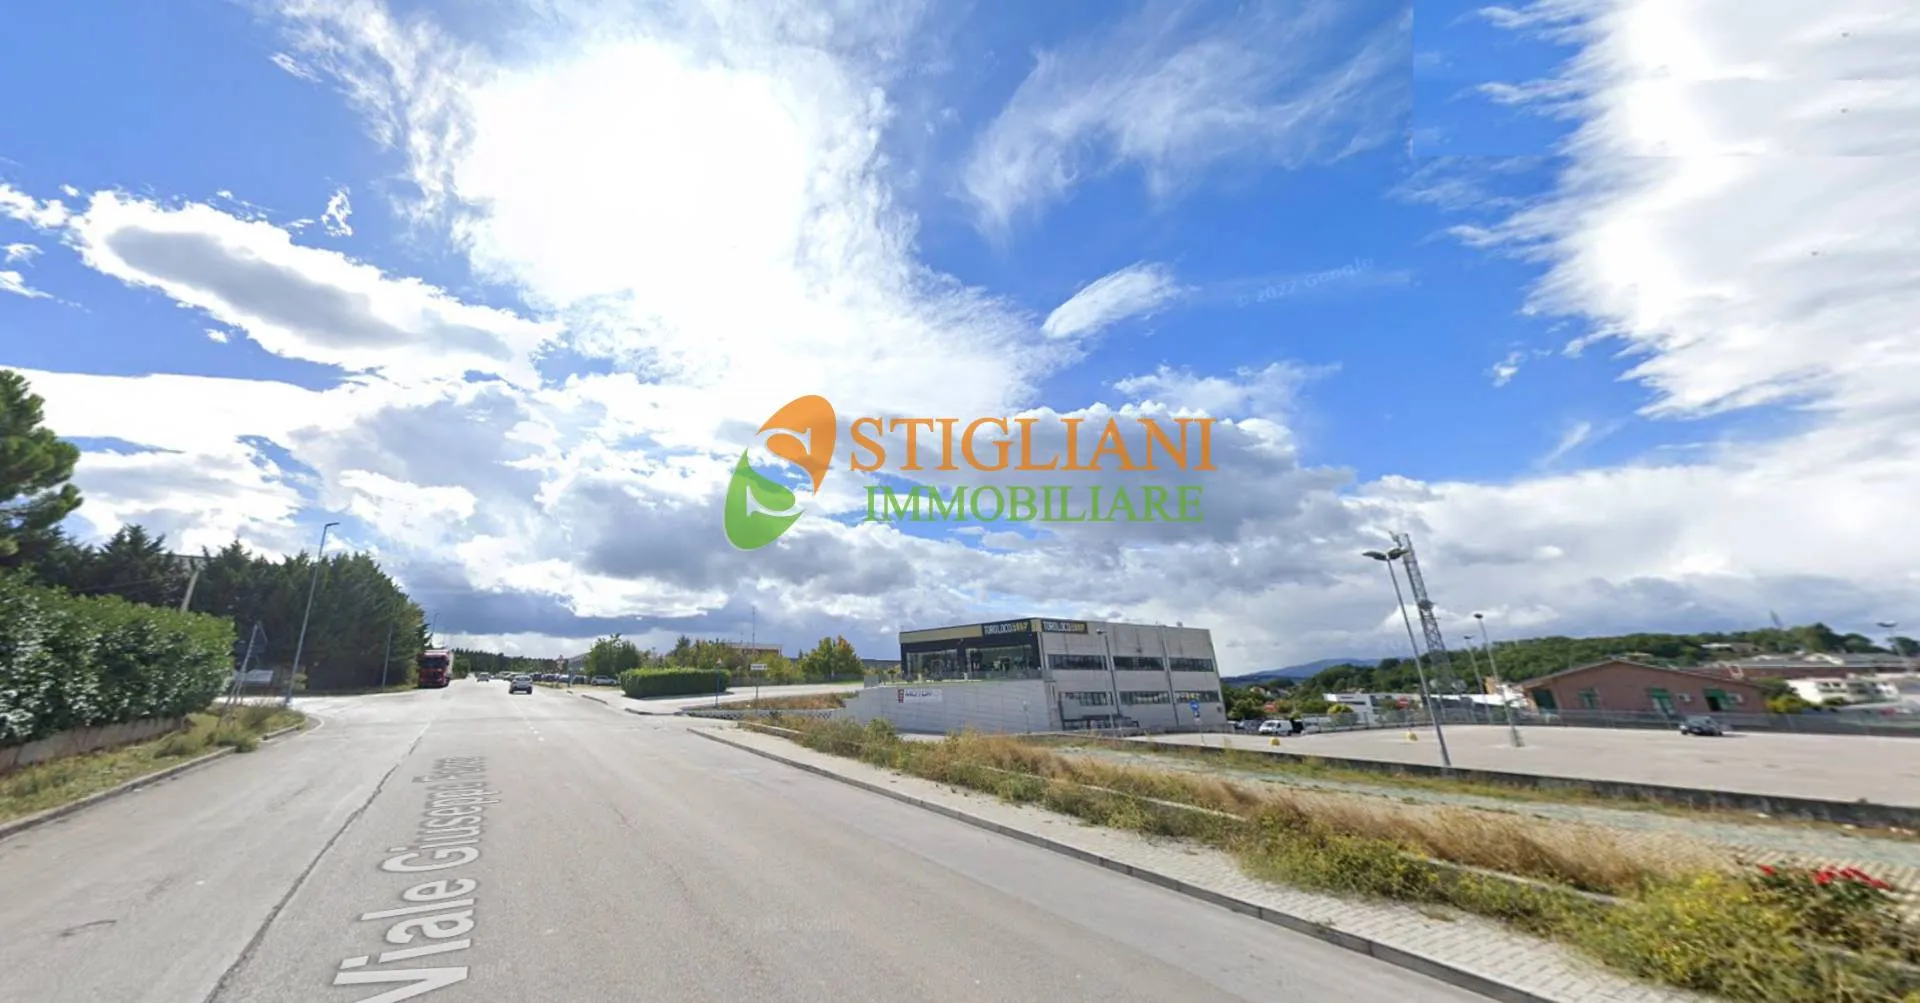 Immagine per Locale Commerciale in vendita a Campobasso Zona industriale